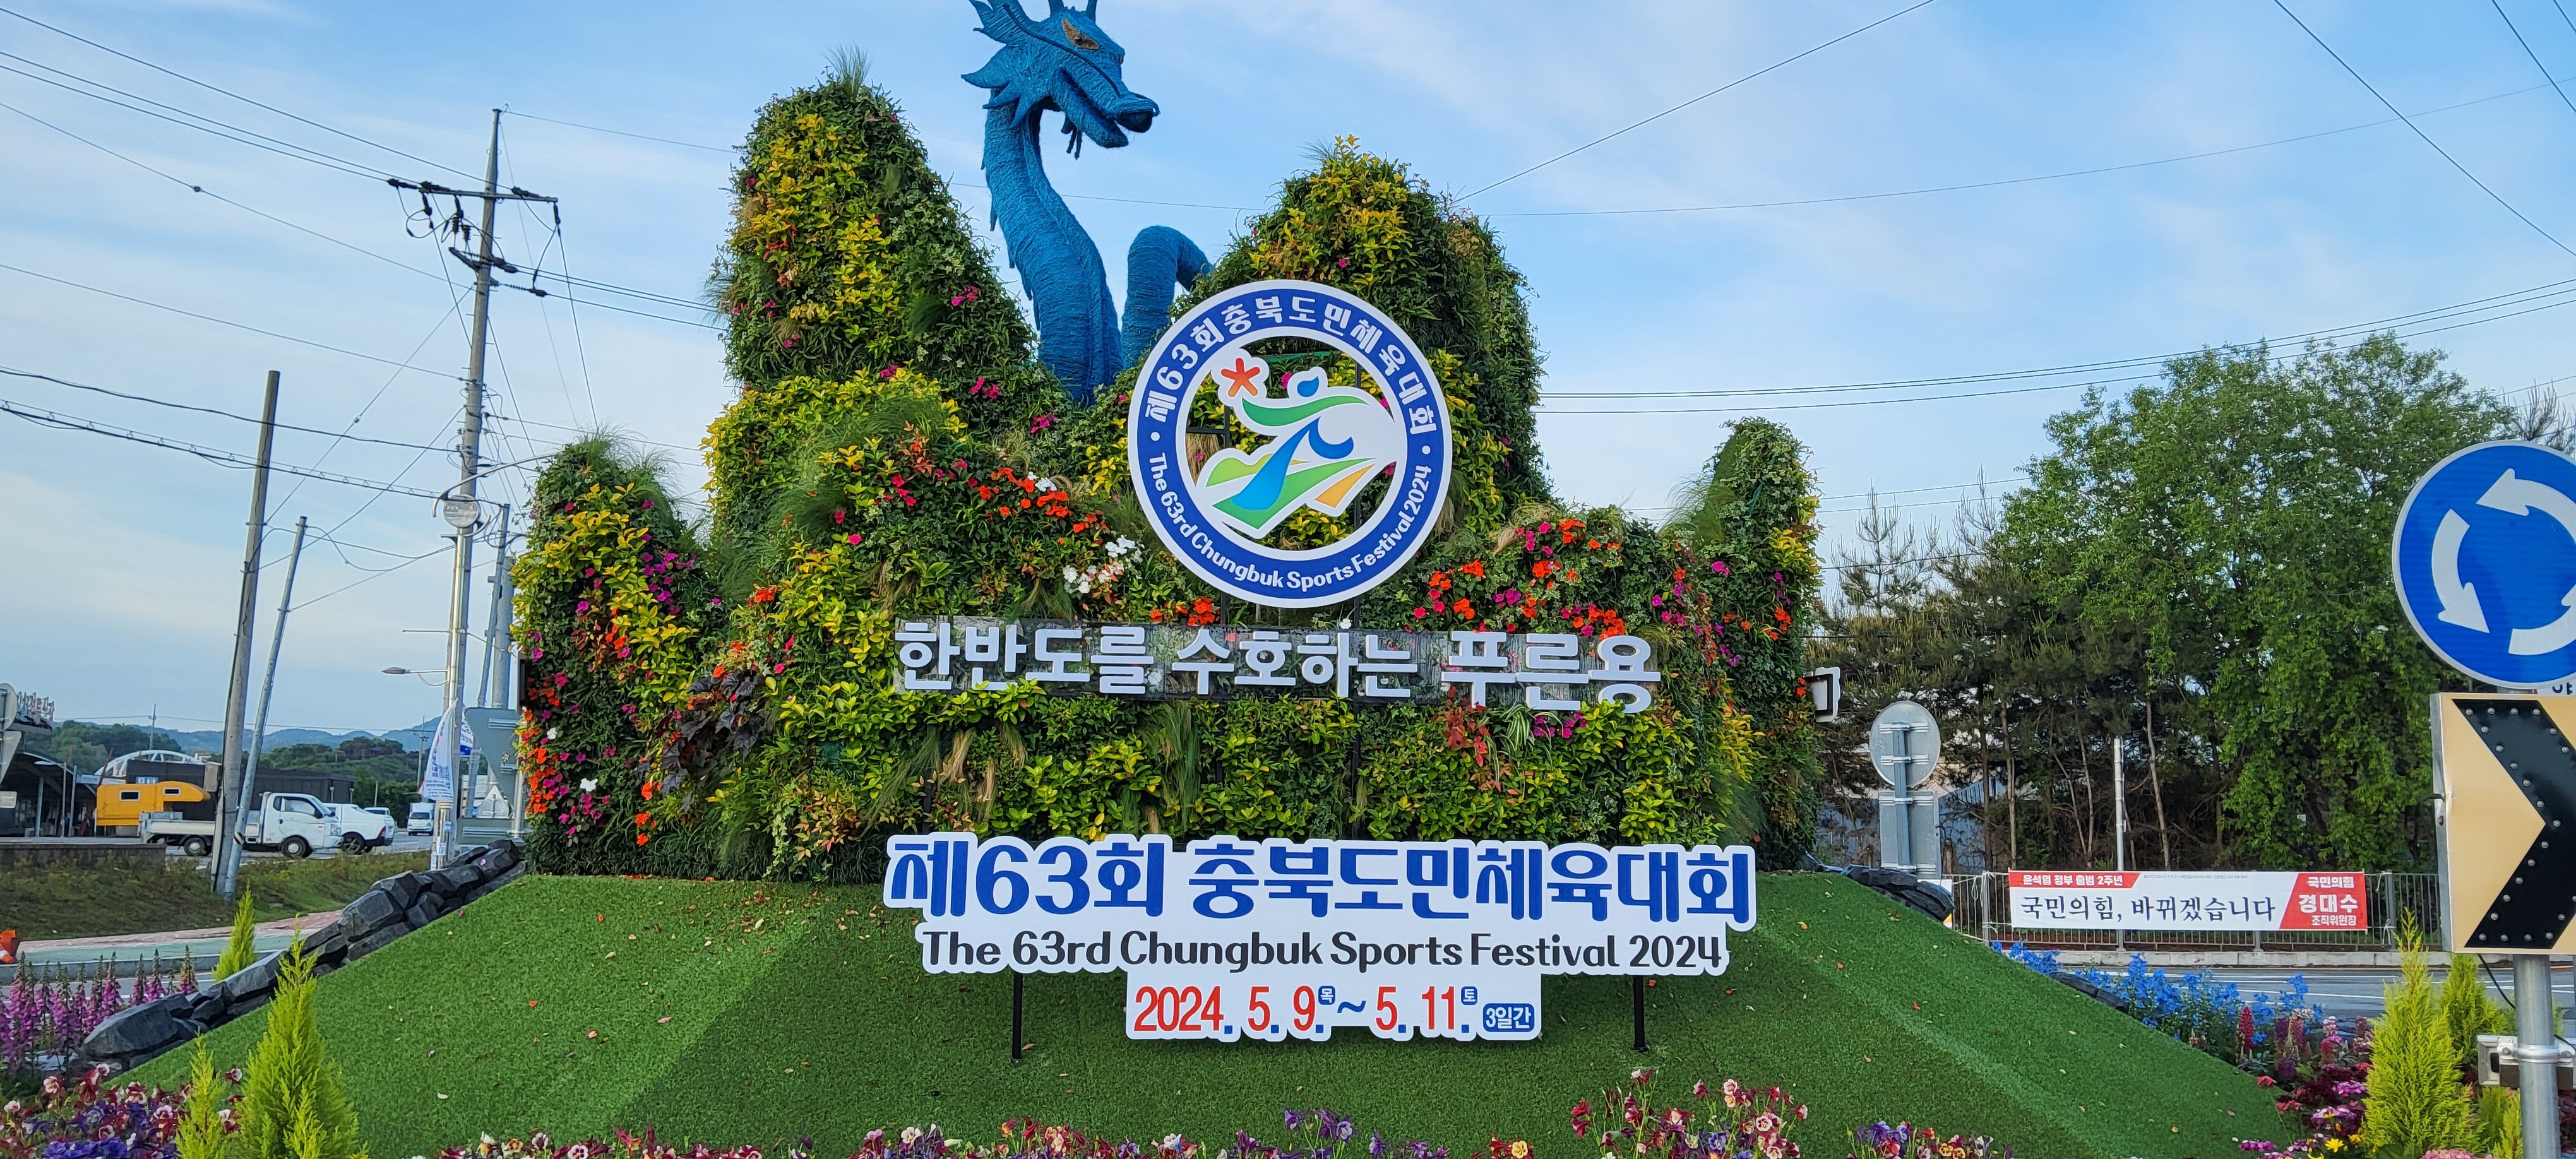 제 63회 충북 도민 체육대회 홍보 사진 2탄 -cboard